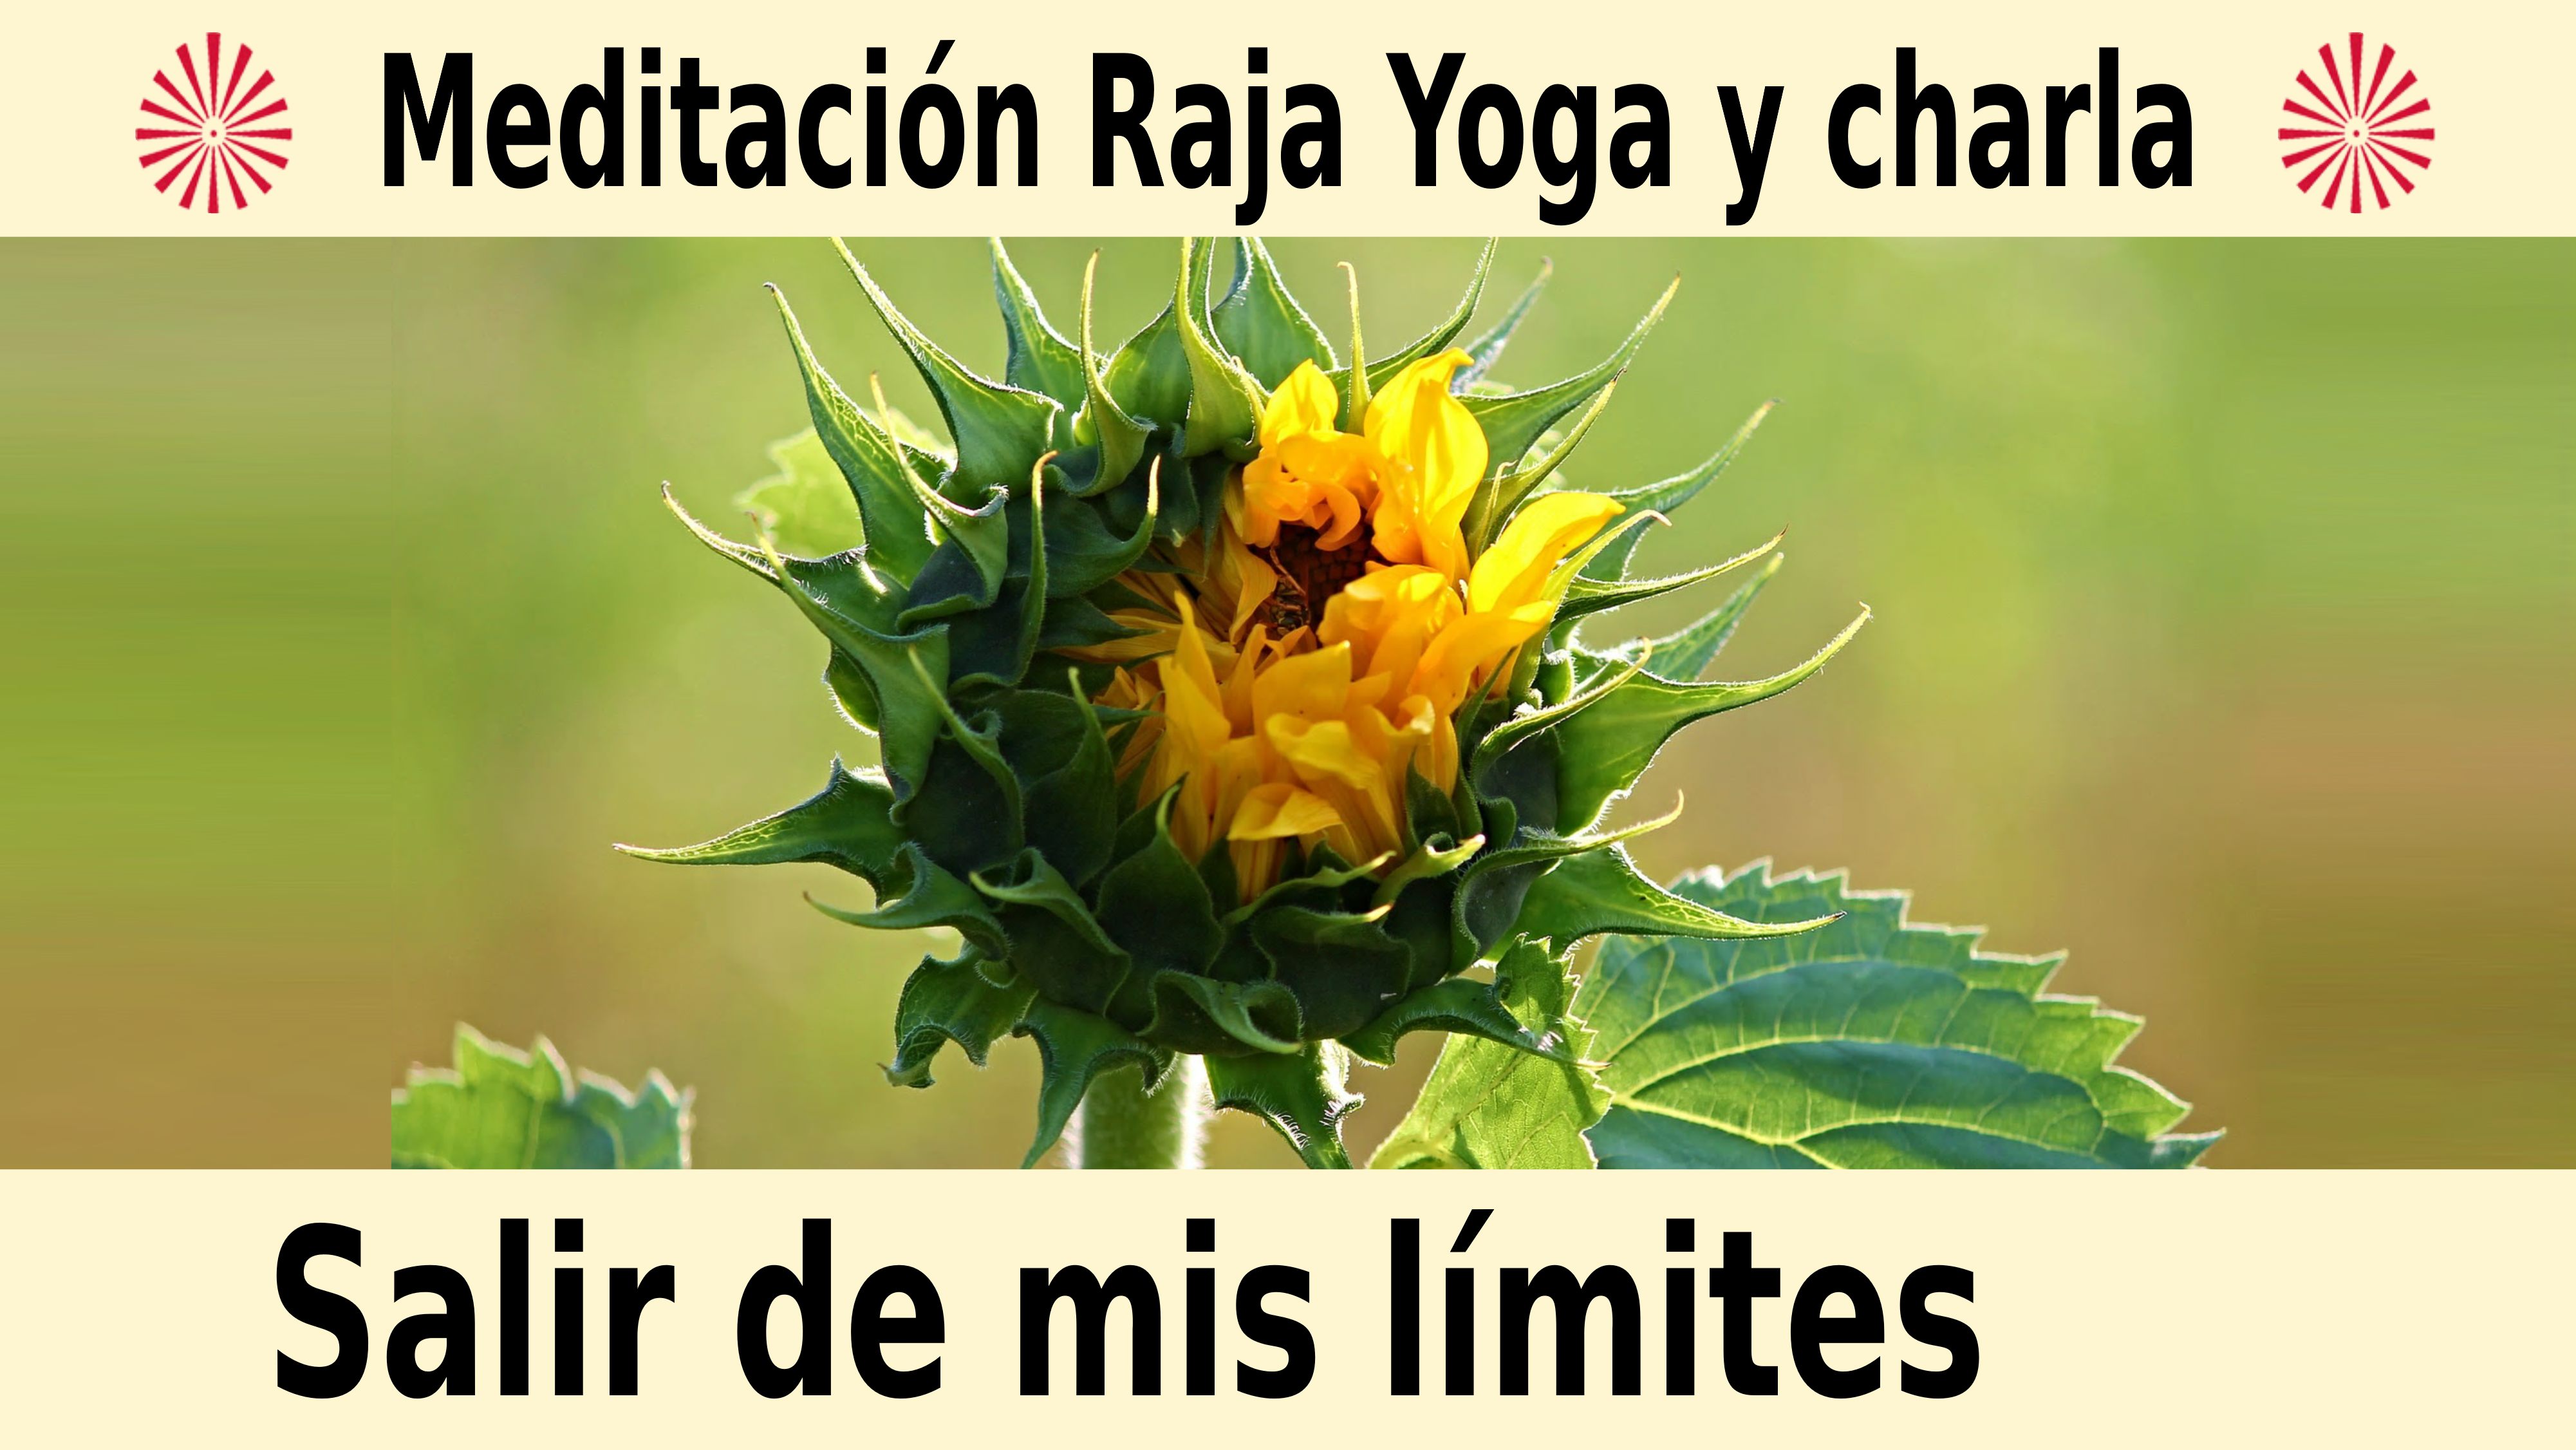 Meditación Raja Yoga y charla:  Salir de mis límites (3 Diciembre 2020) On-line desde Barcelona